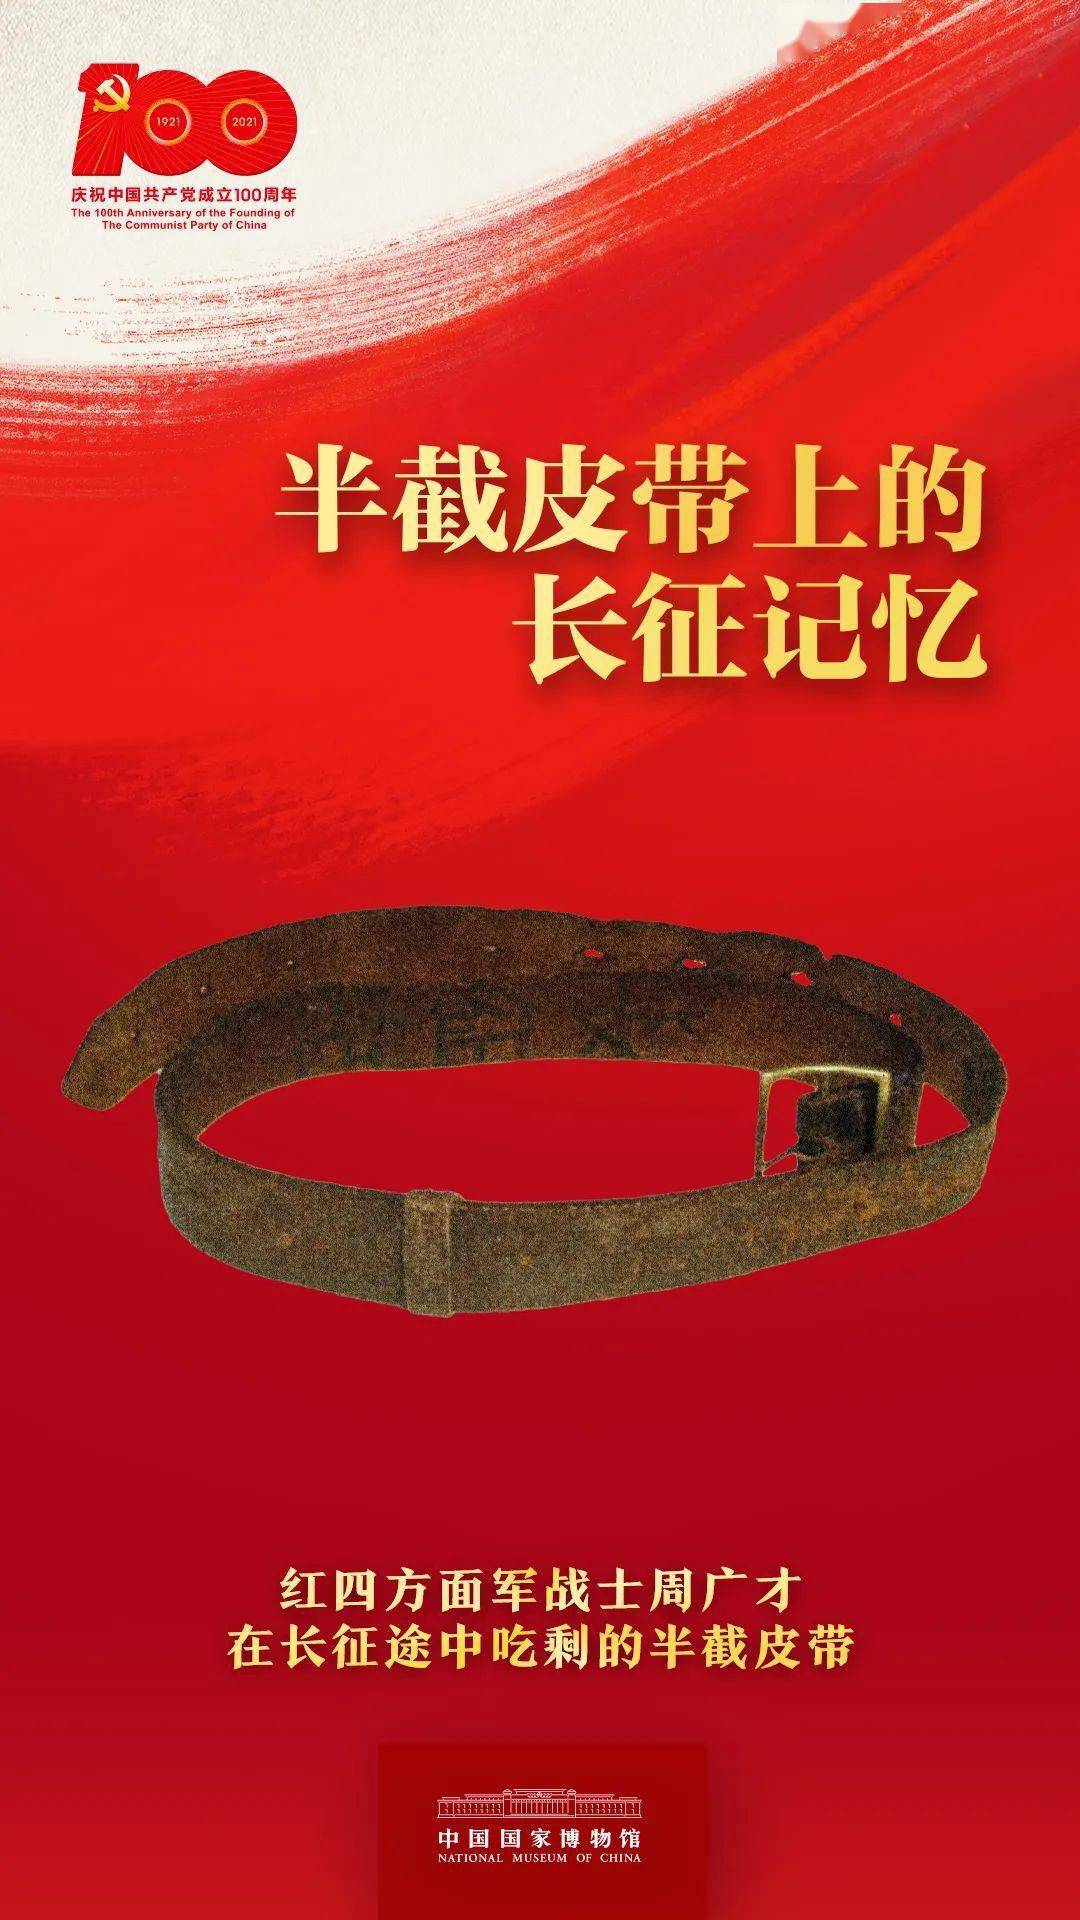 红军长征途中吃剩的半截皮带视频寻红色文物悟中国精神